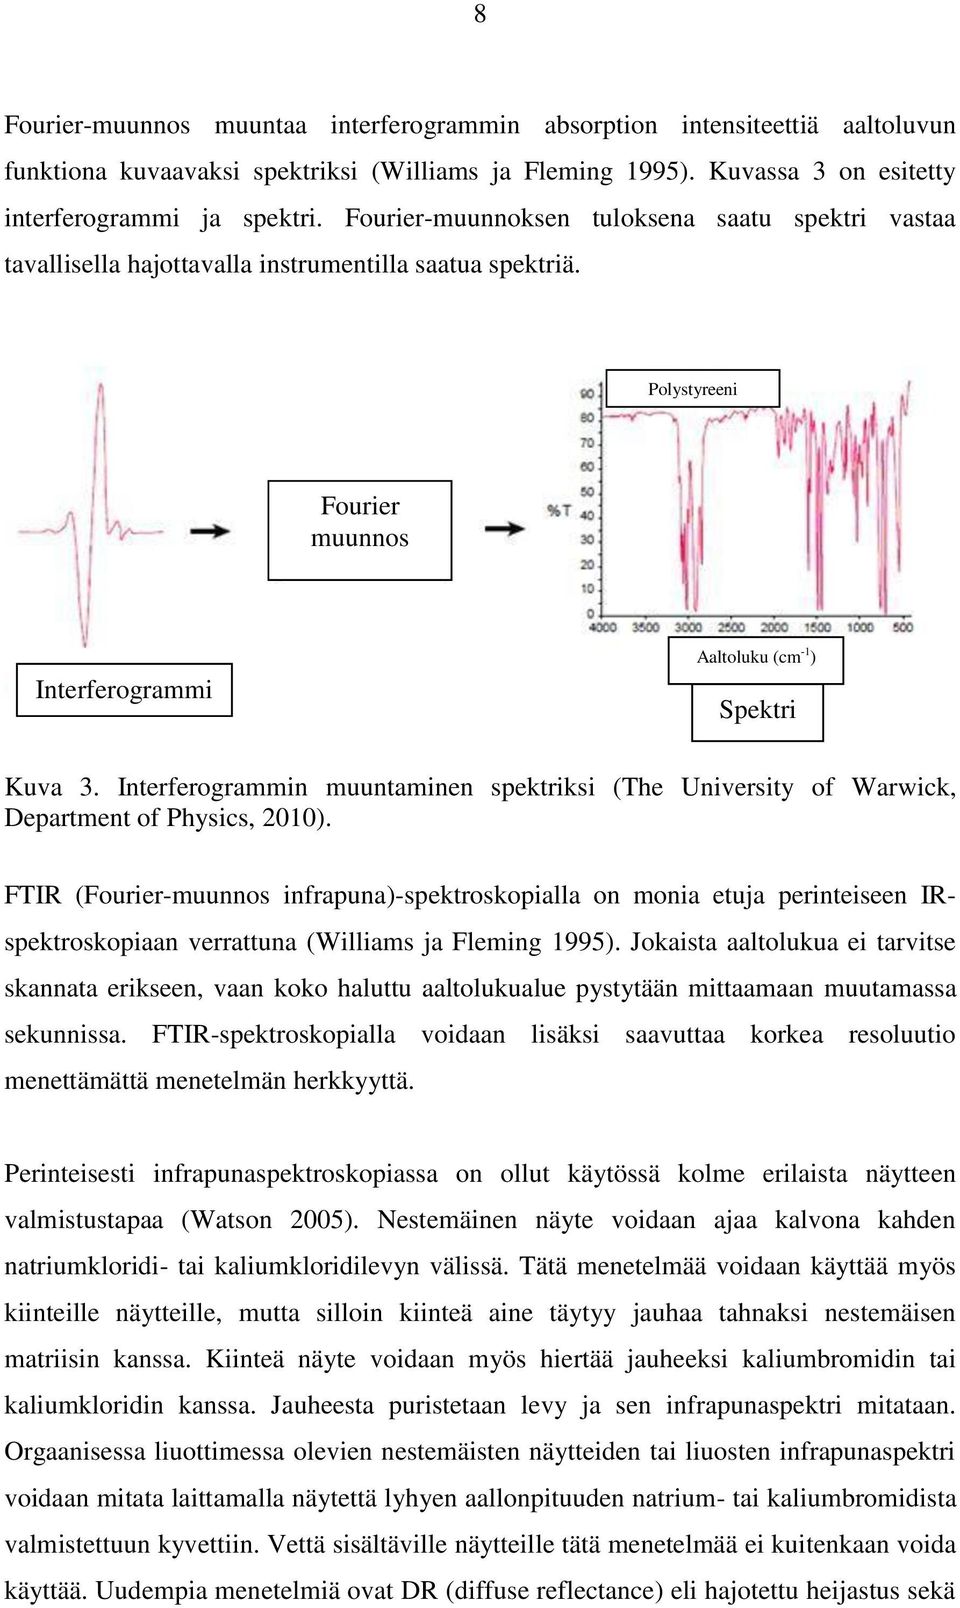 Interferogrammin muuntaminen spektriksi (The University of Warwick, Department of Physics, 2010).